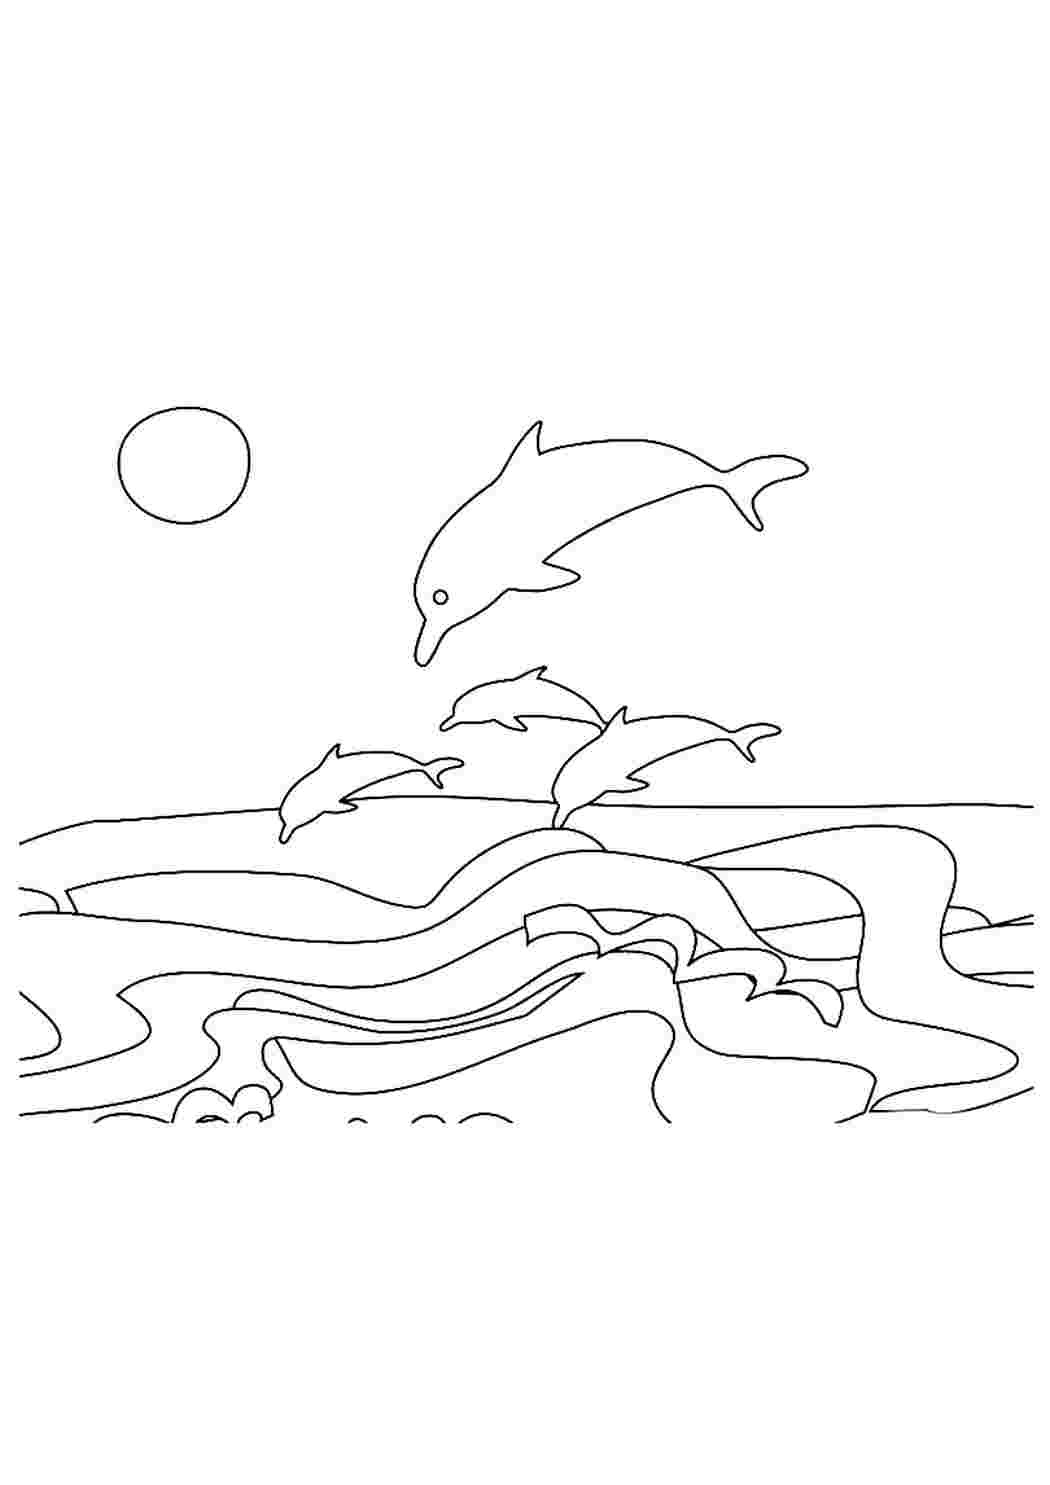 Раскраски Раскраска Раскраска дельфины в море распечатать. Красивые раскраски. Раскраска Раскраска дельфины в море распечатать. Разукрашки.